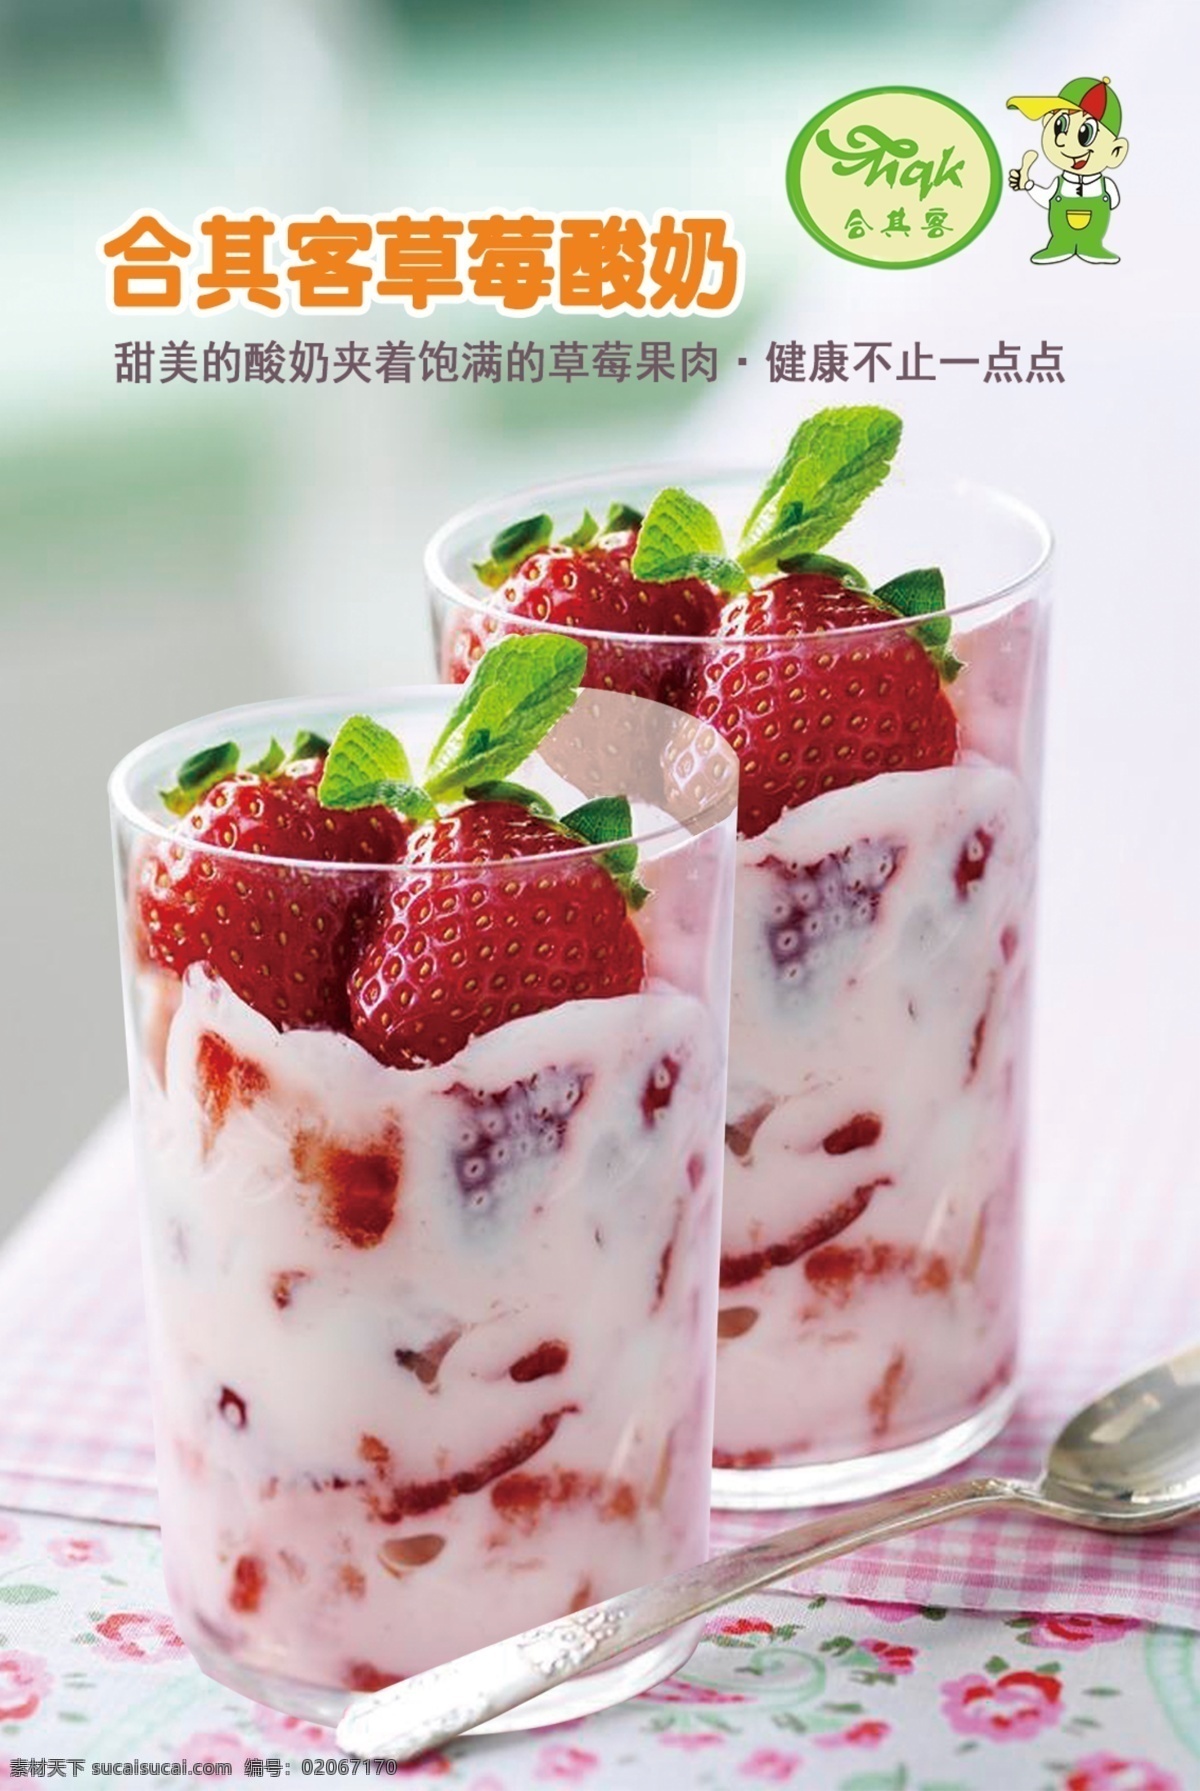 草莓 酸奶 灯箱 片 水果酸奶 草莓酸奶 灯箱片 合其客 奶吧产品 白色